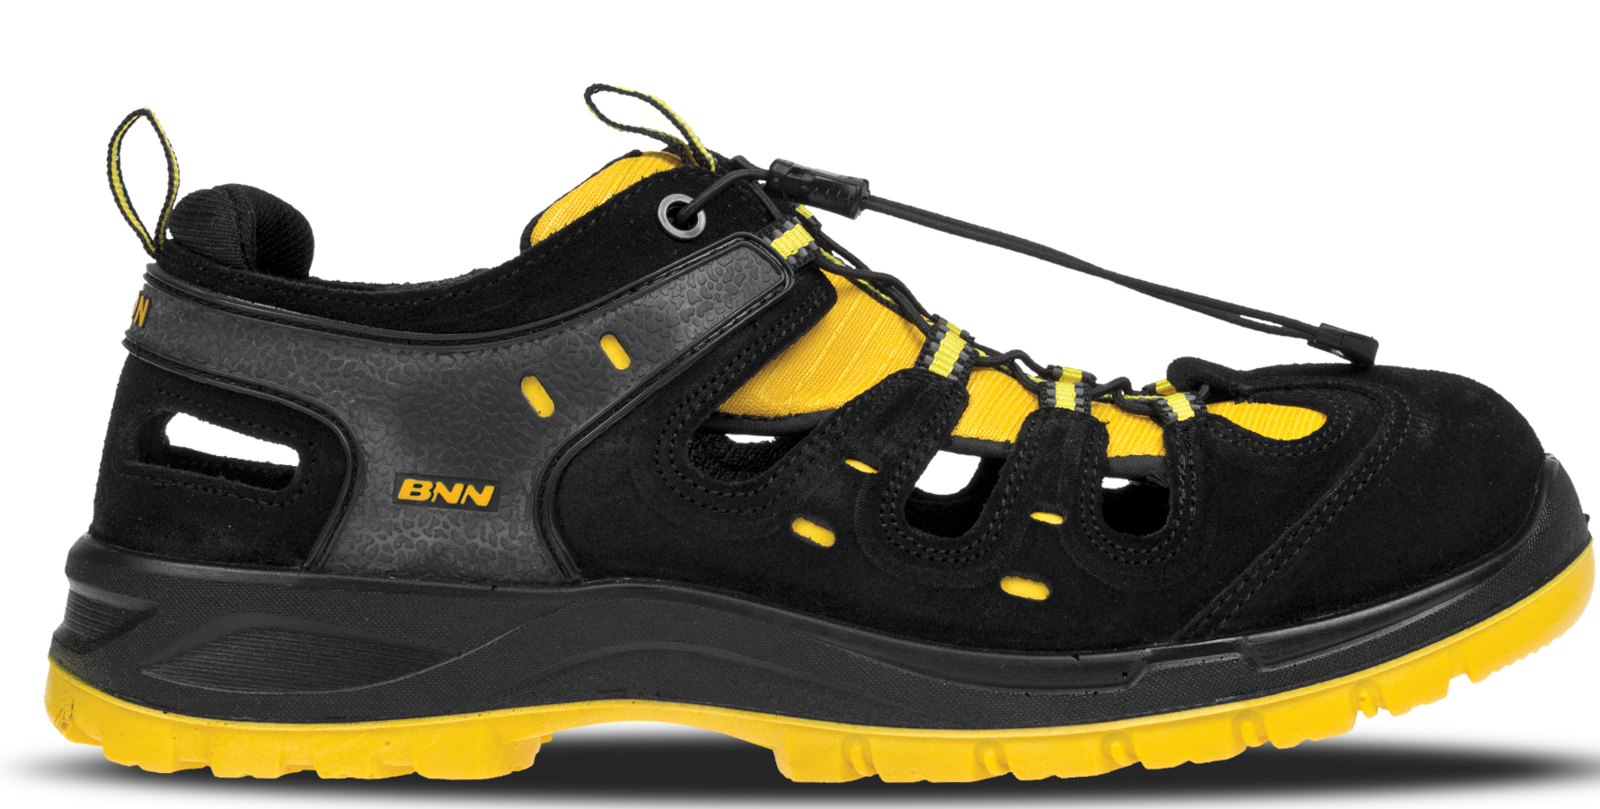 Bezpečnostné sandále Bombis lite NM S1 - veľkosť: 39, farba: žltá